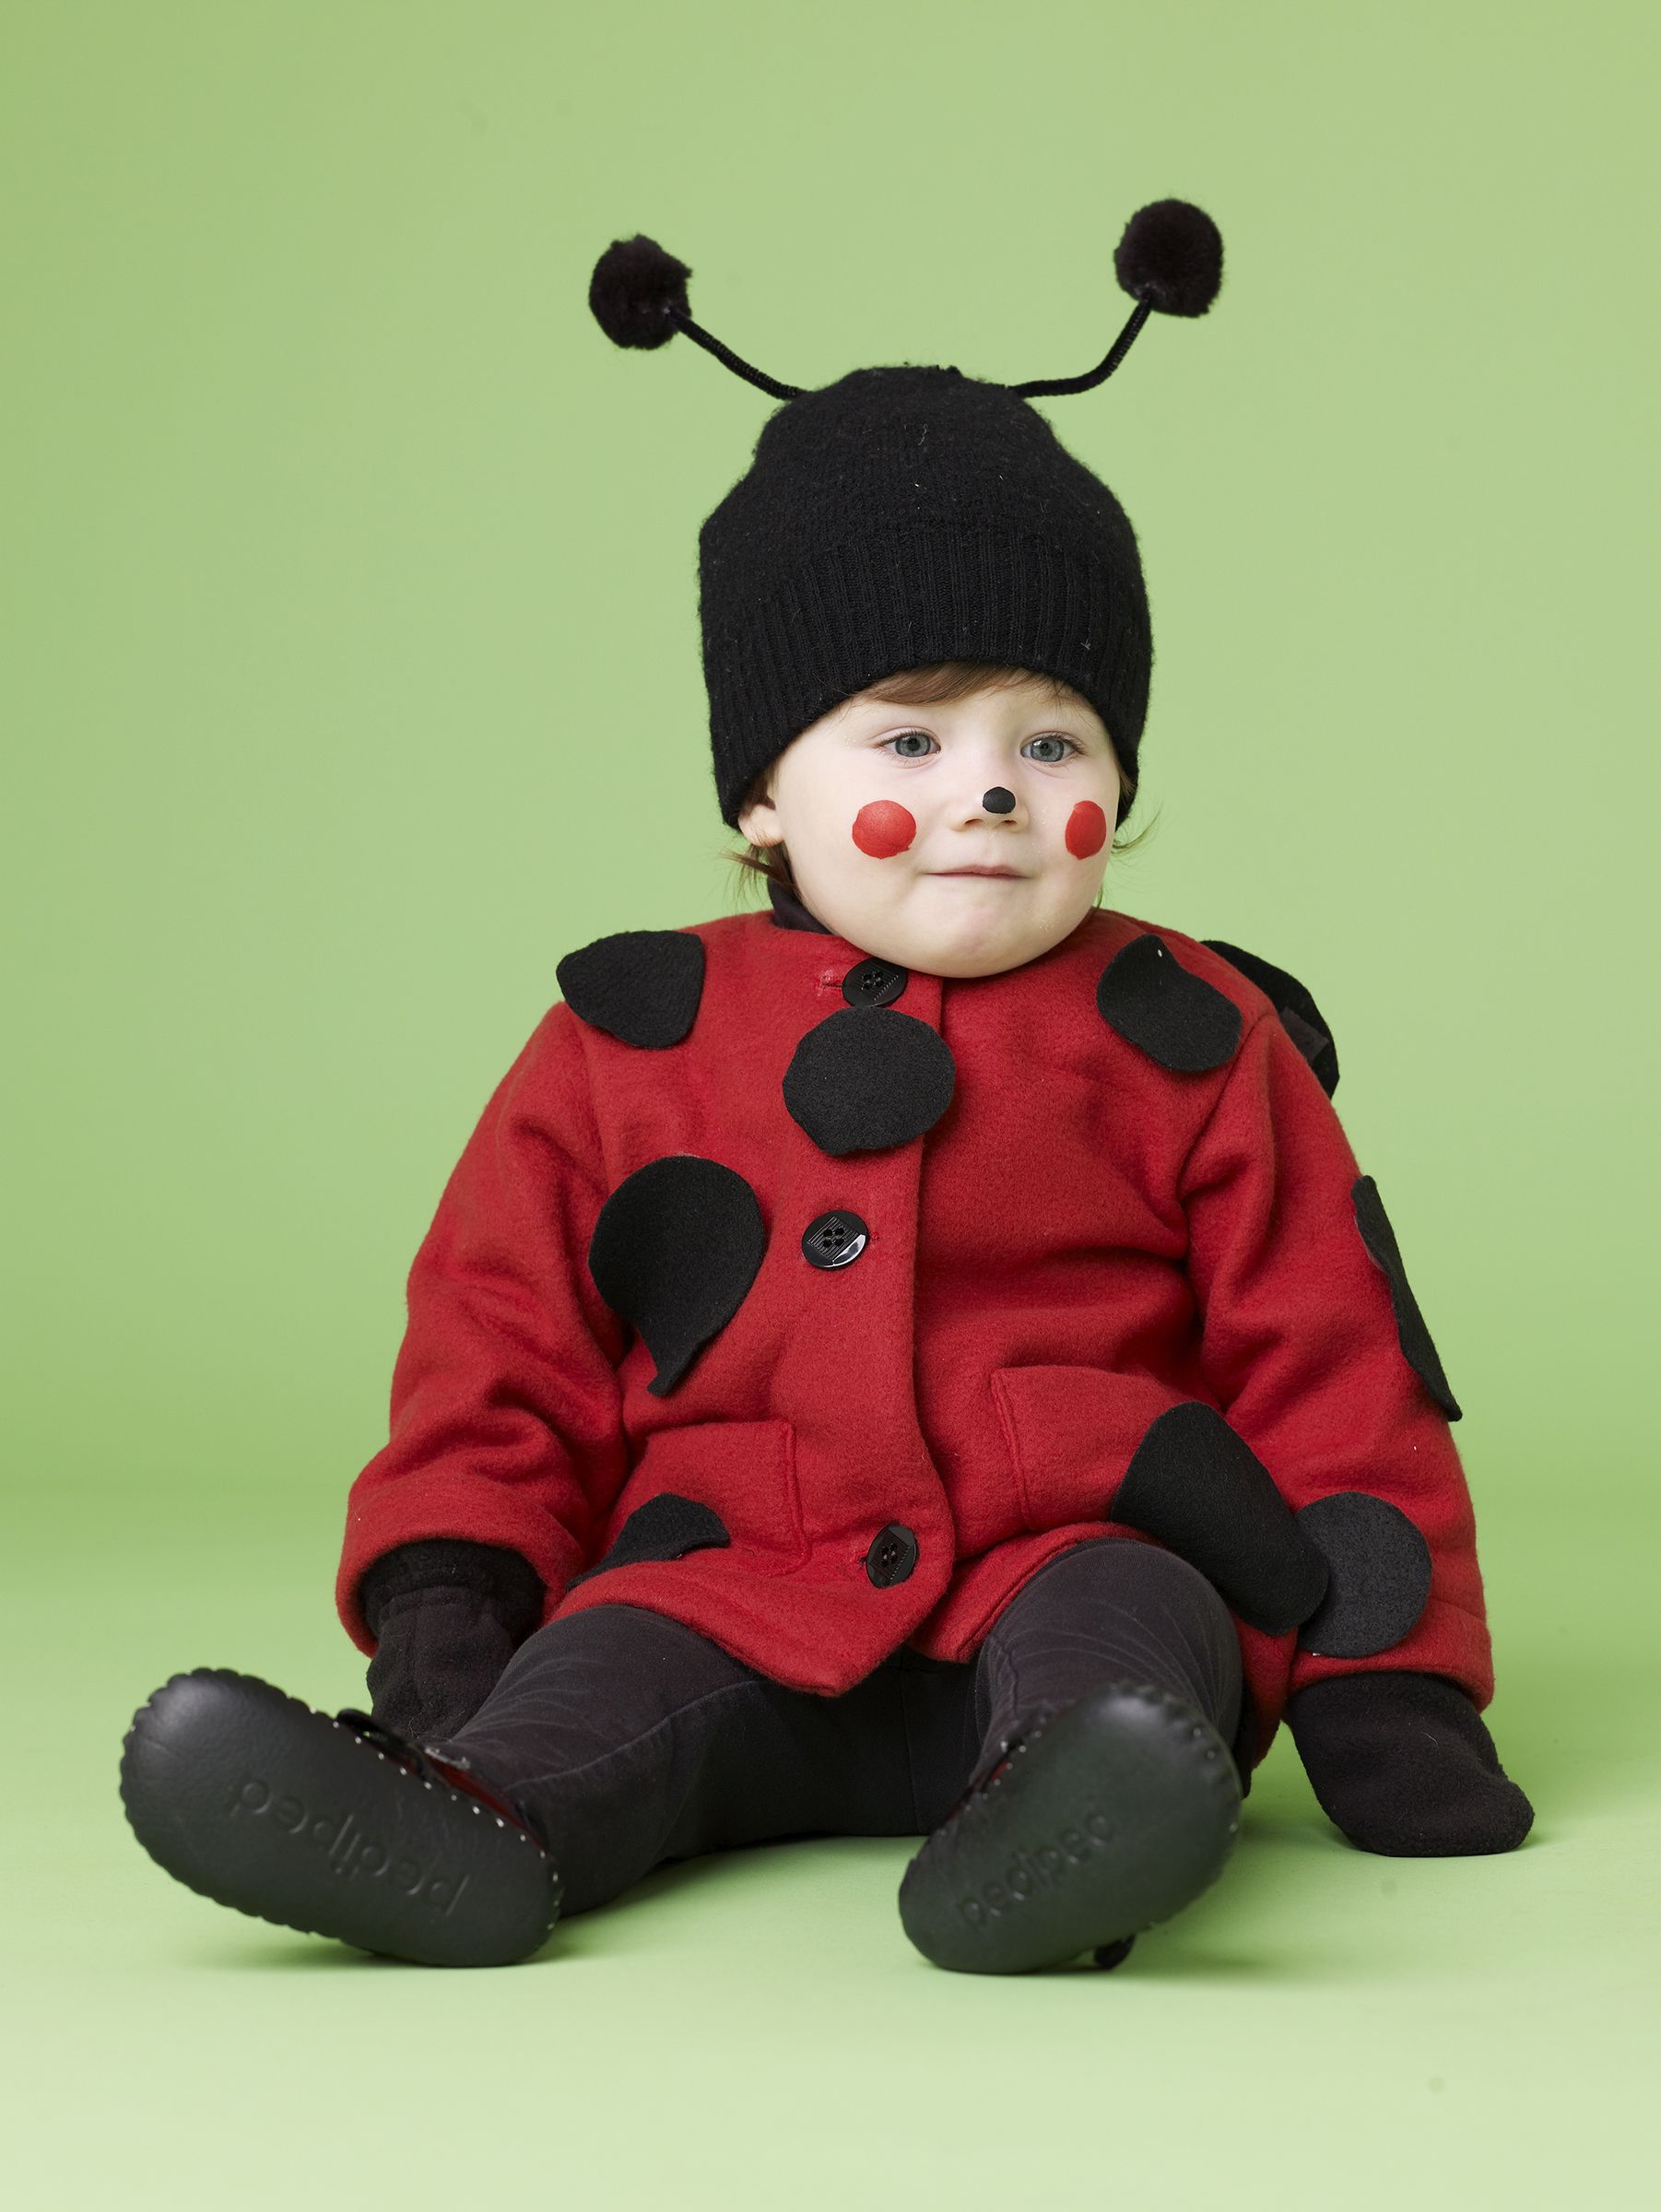 baby ladybug costume